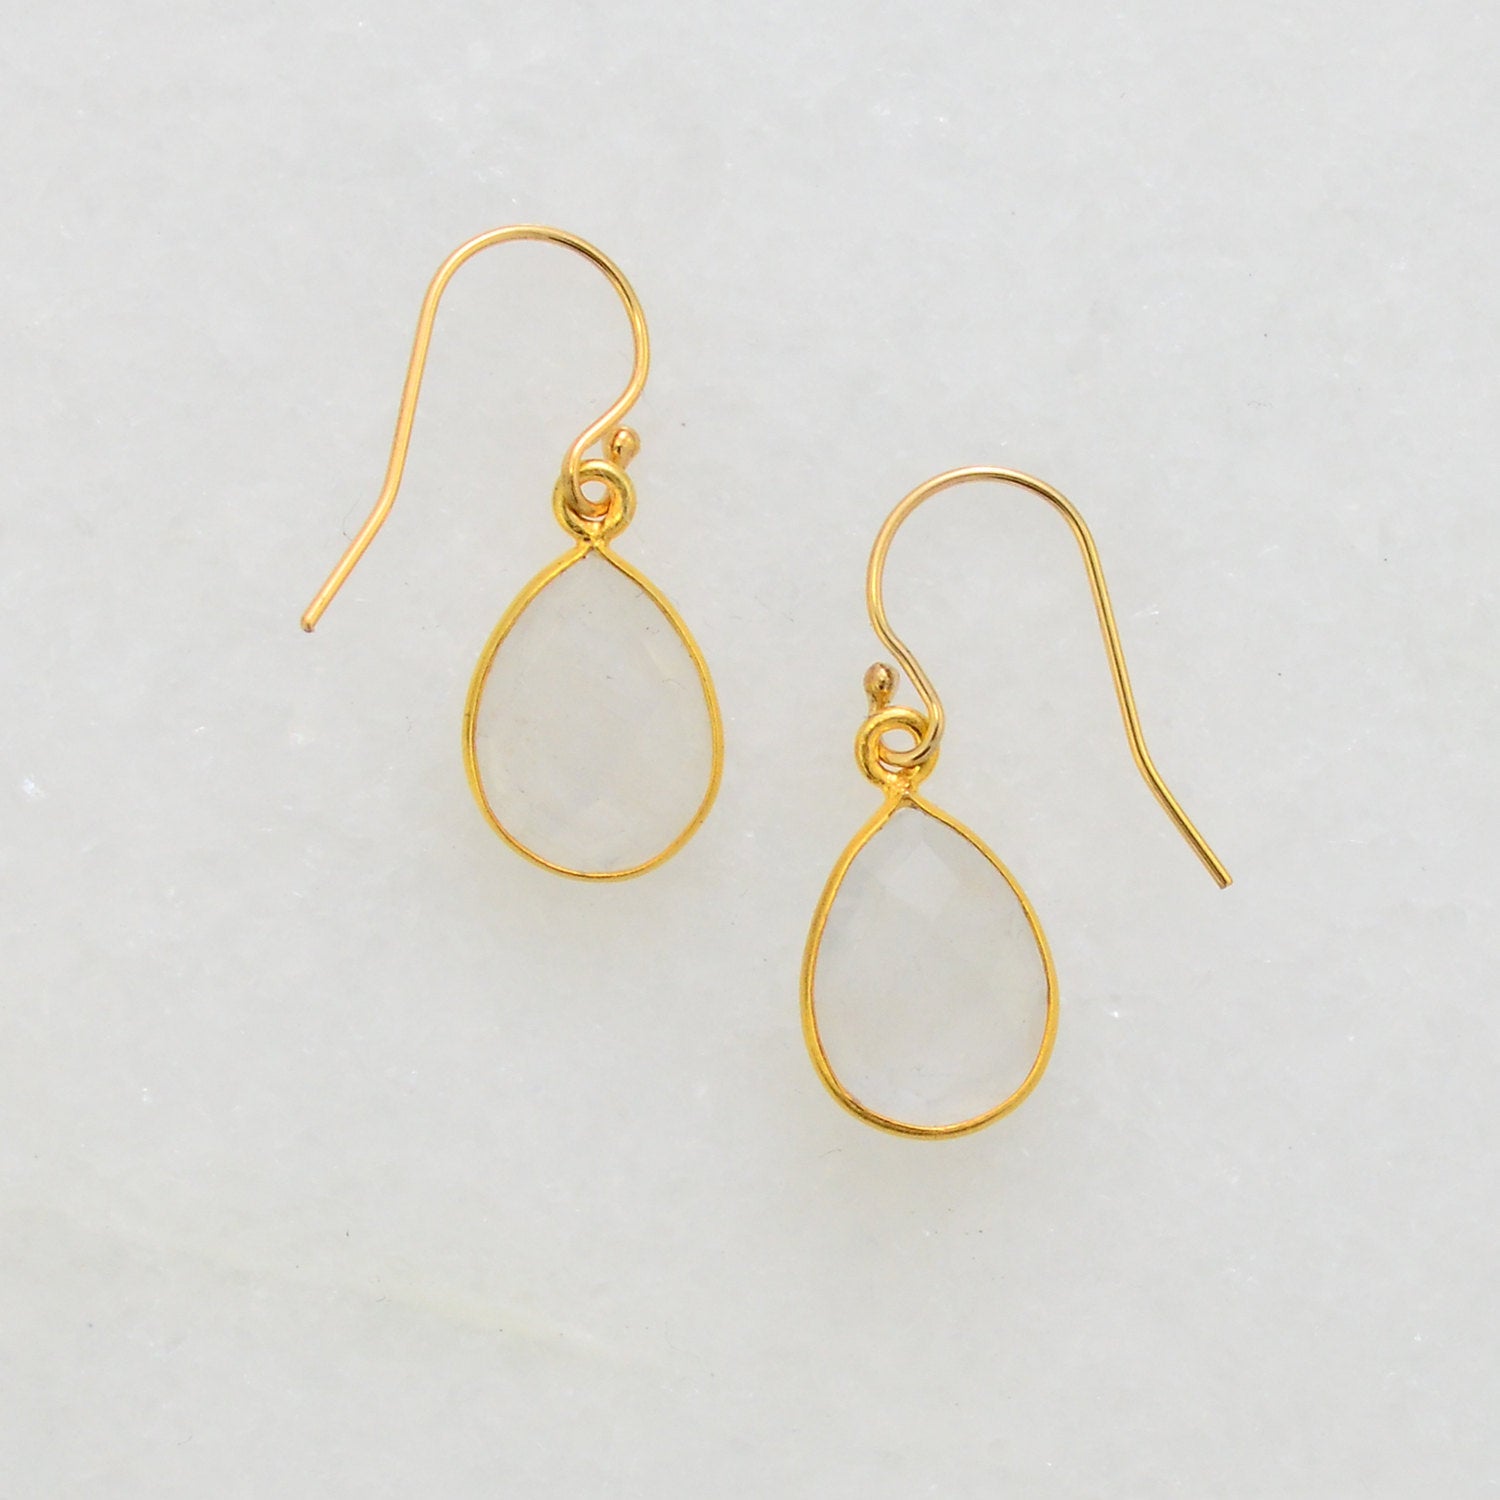 Small Dainty Earring - Moonstone Earring - Delicate Earring - Bezel Set earring - Bezel Drop Earrings - Bridesmaid Earrings